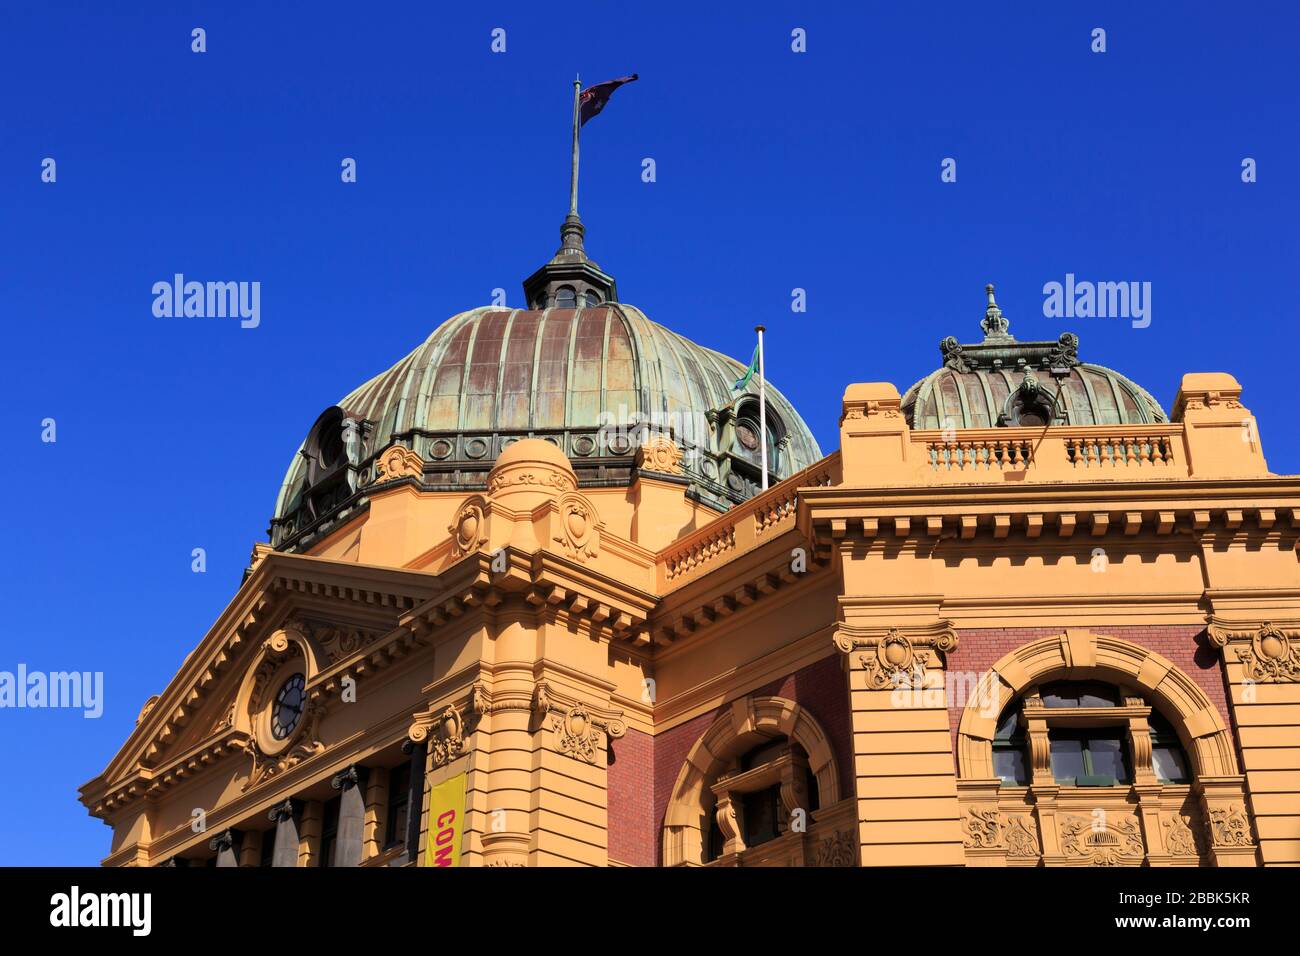 La estación de Flinders Street, Melbourne, Victoria, Australia Foto de stock